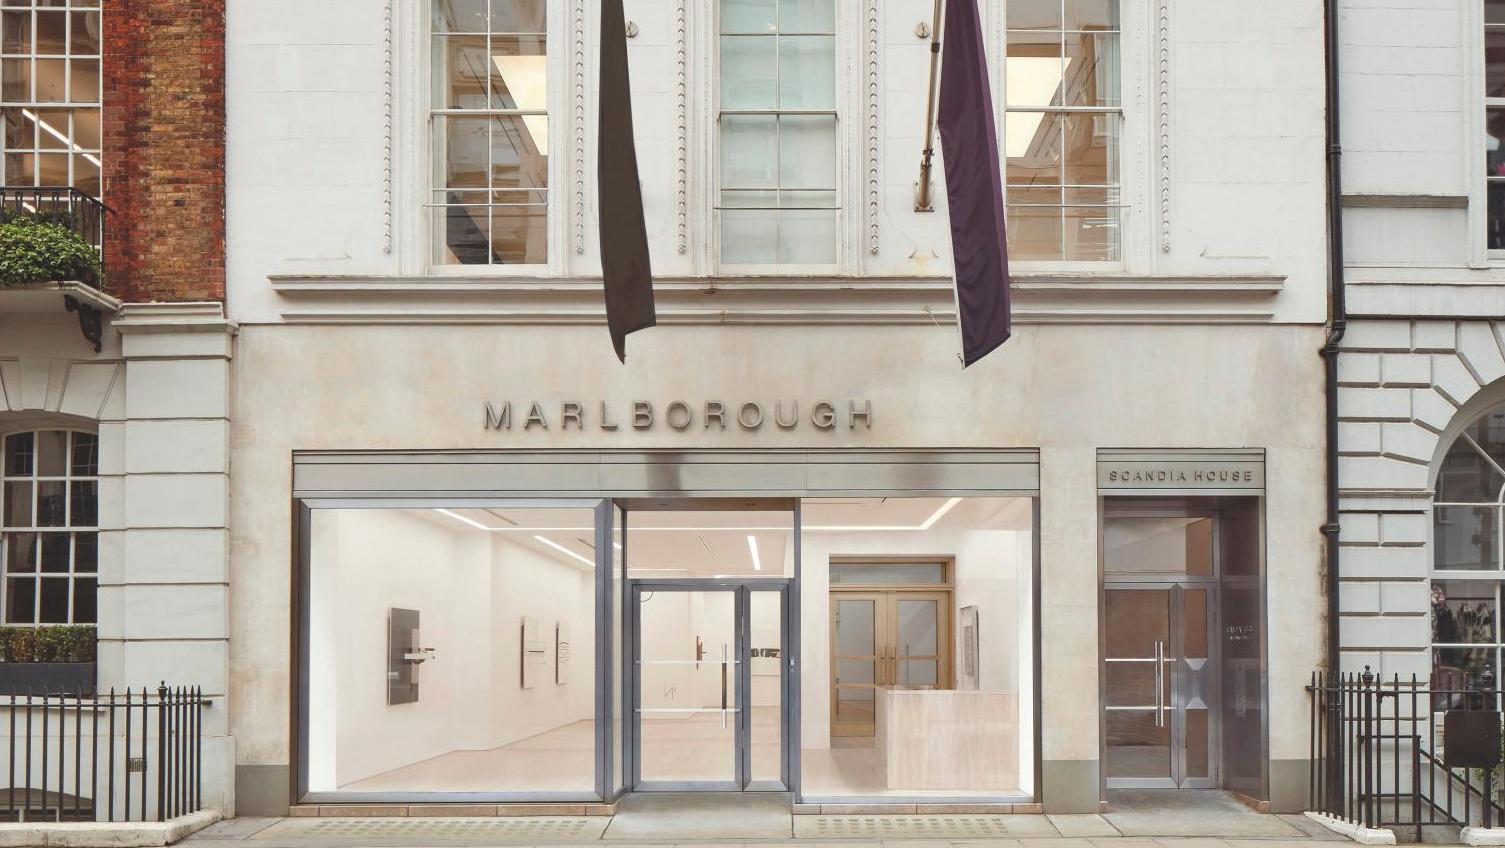 © Marlborough Les galeries face au ralentissement du marché